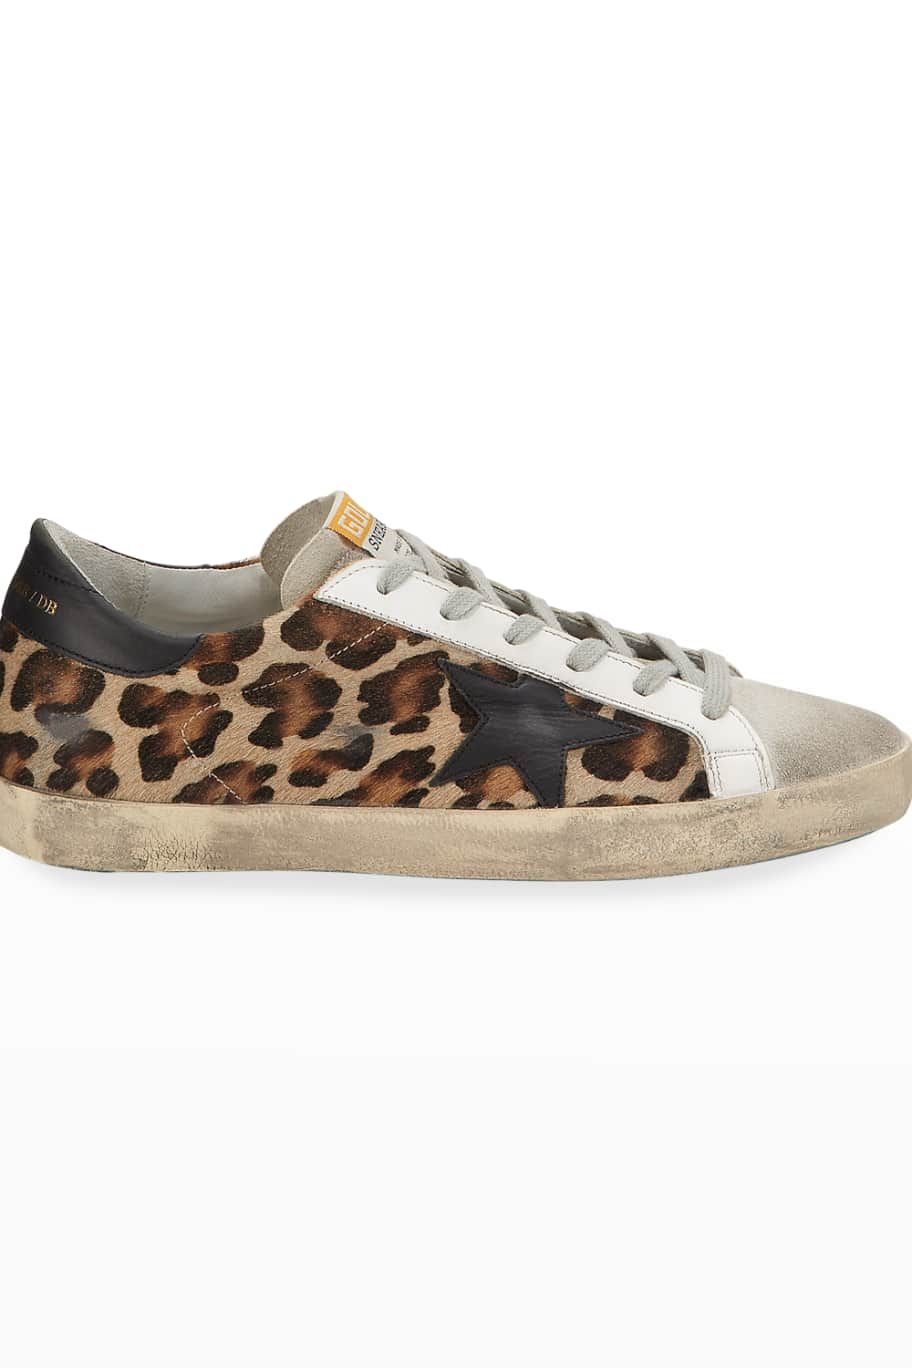 Golden Goose Superstar Leopard Calf Hair Sneakers | Neiman Marcus